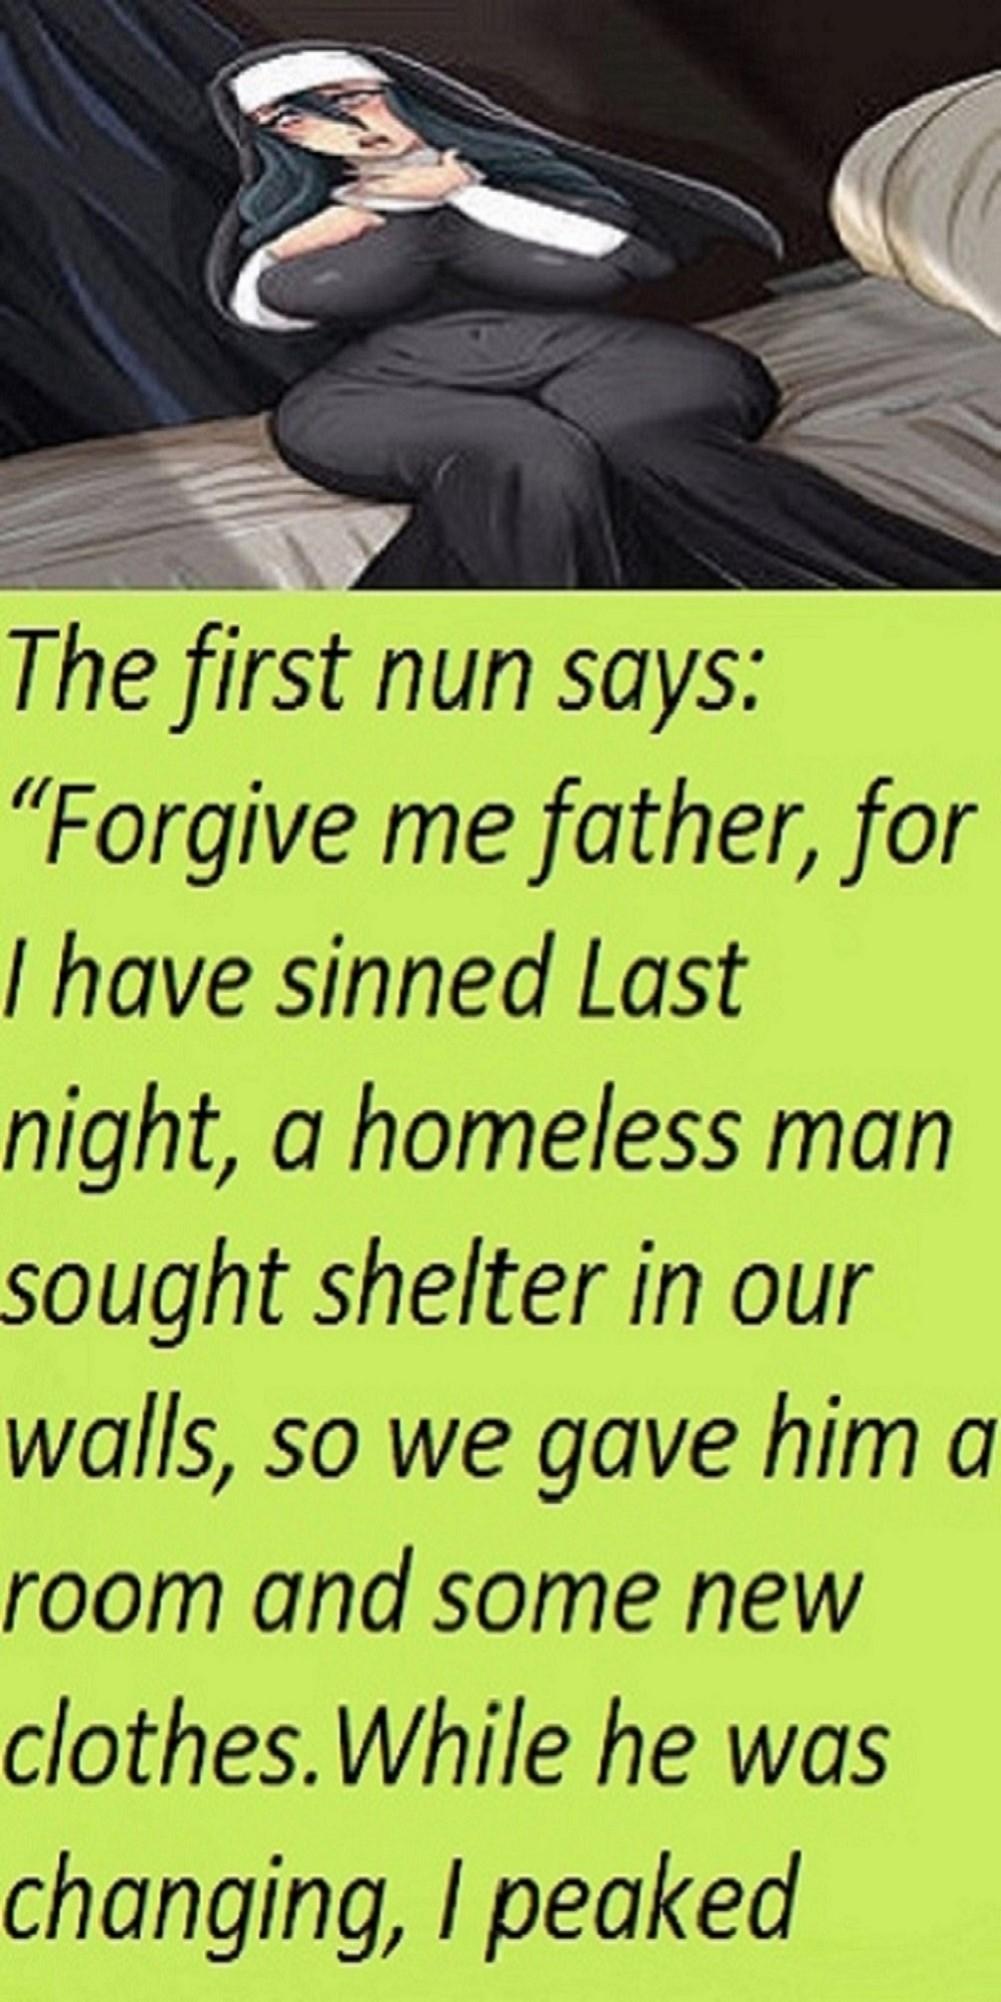 1The Nun Said Forgive Me Father For -